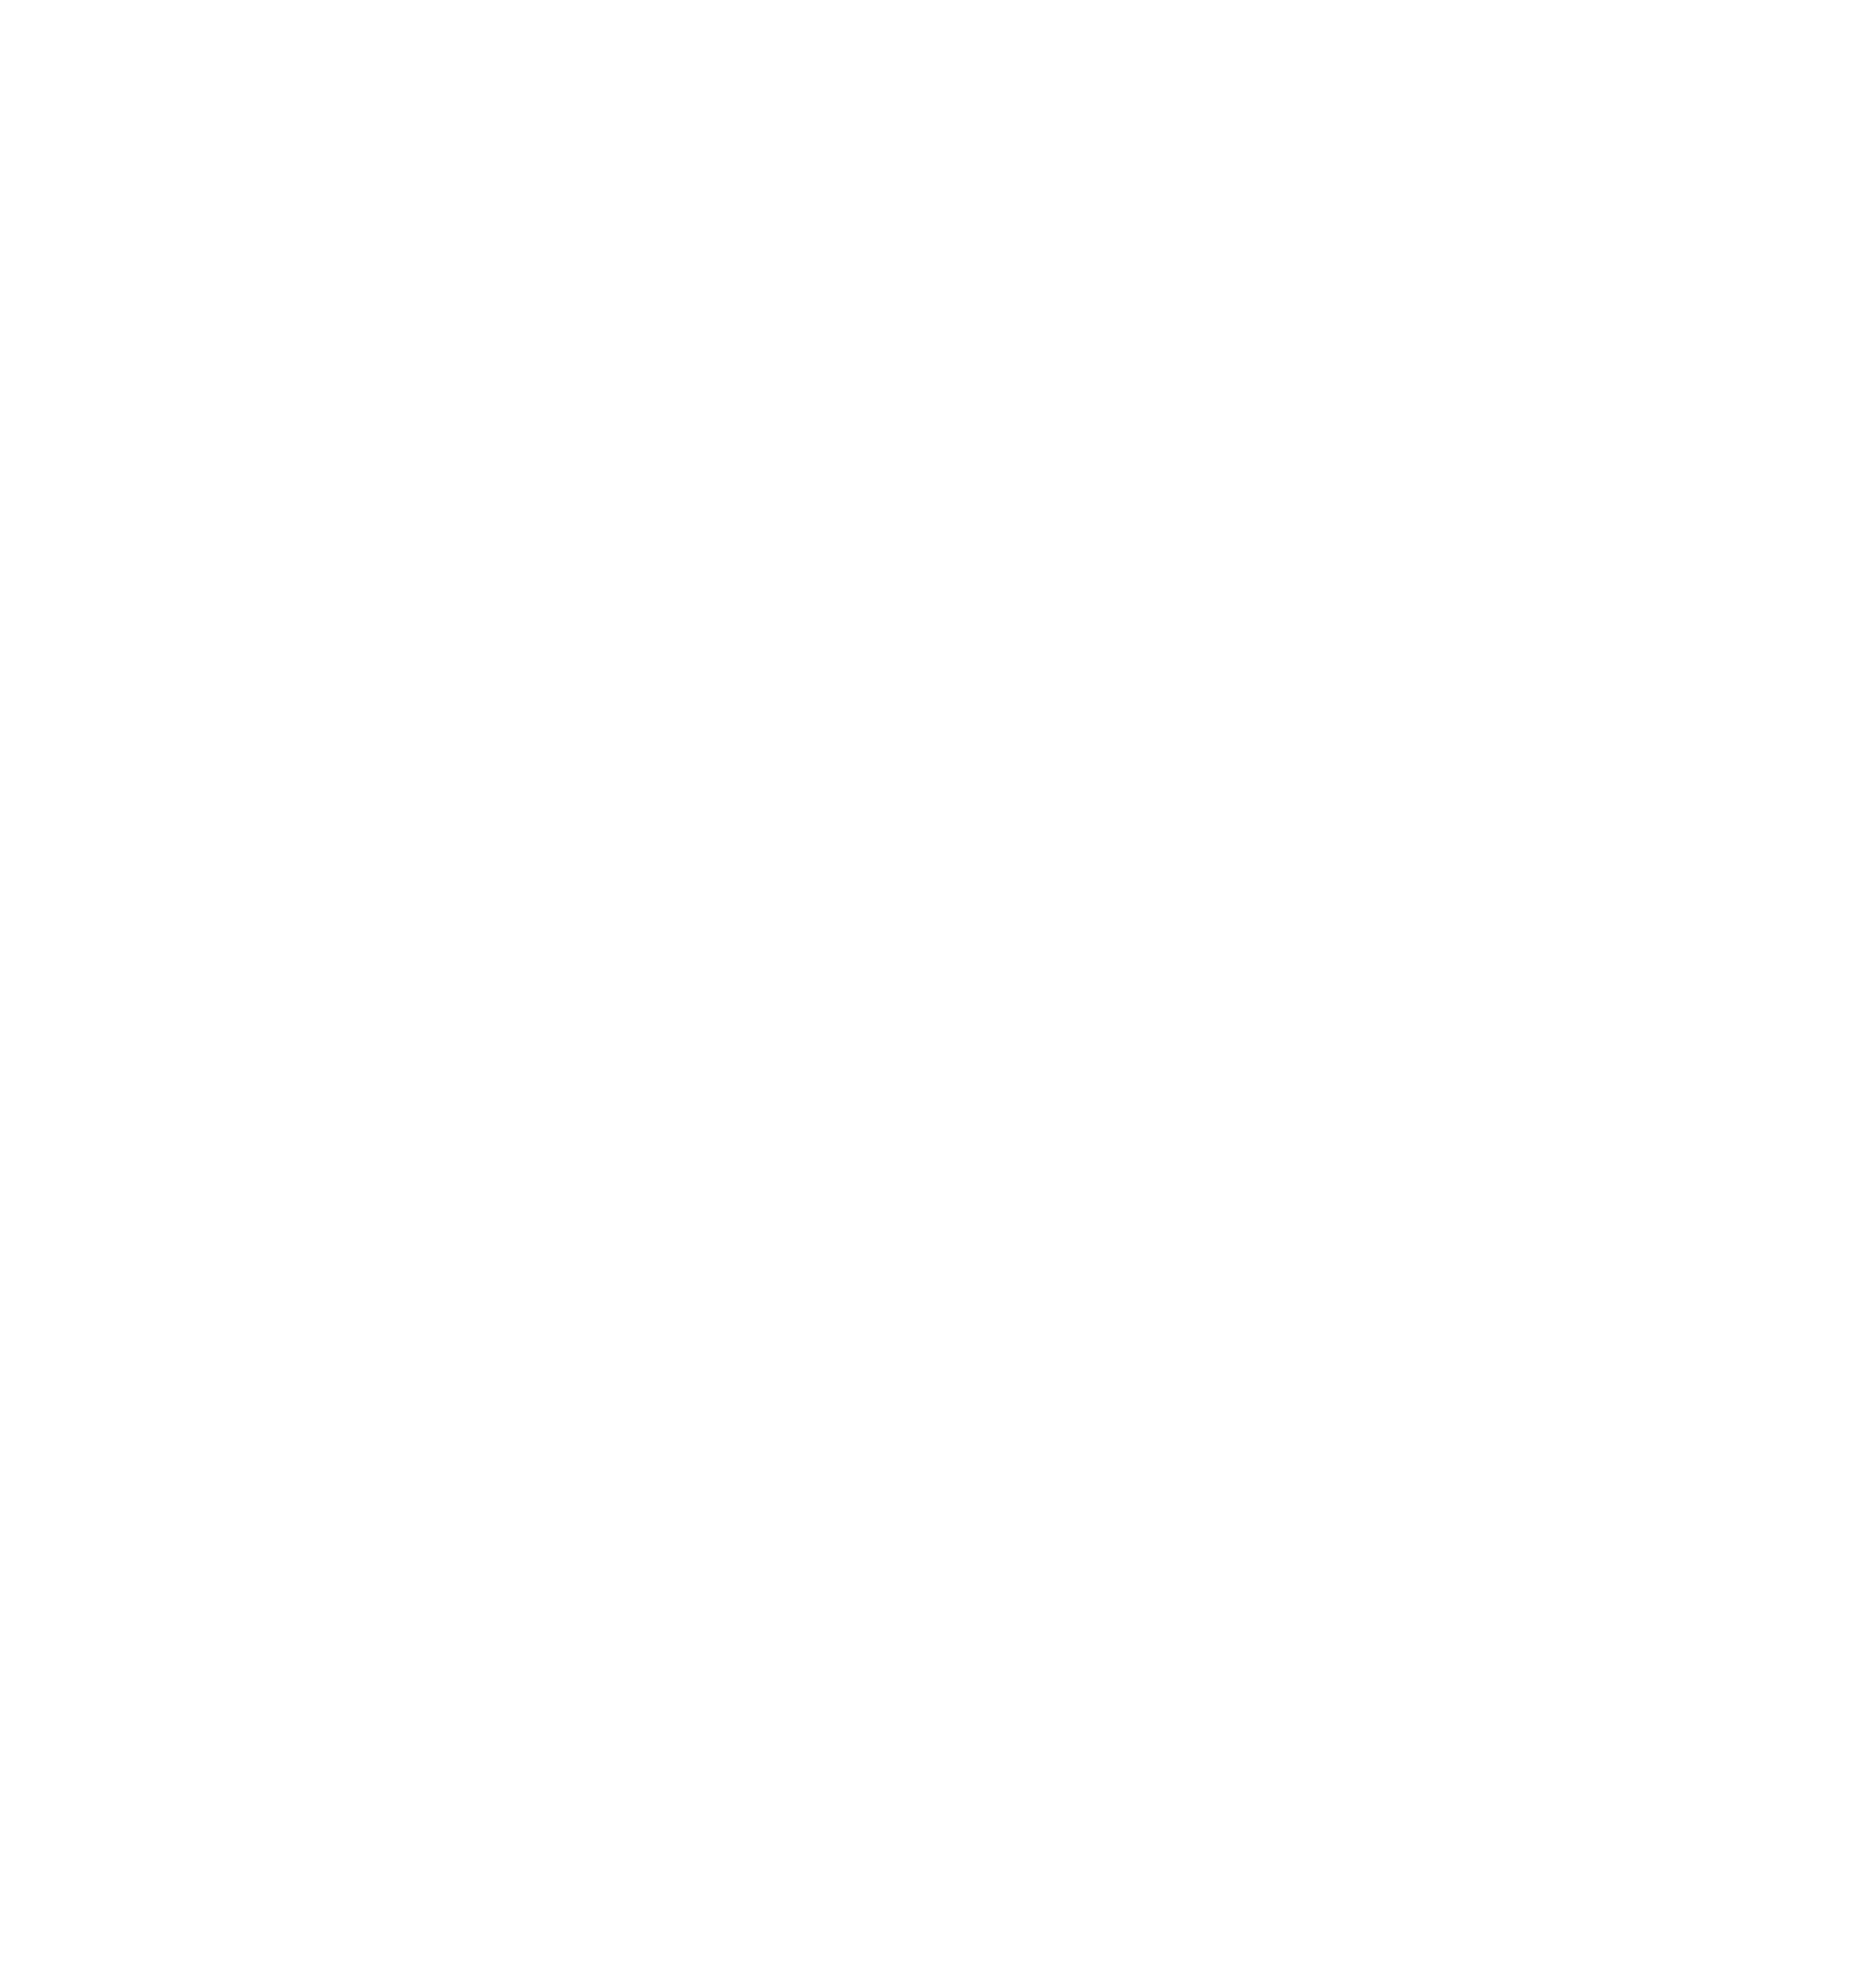 Nectar-logo-00 2